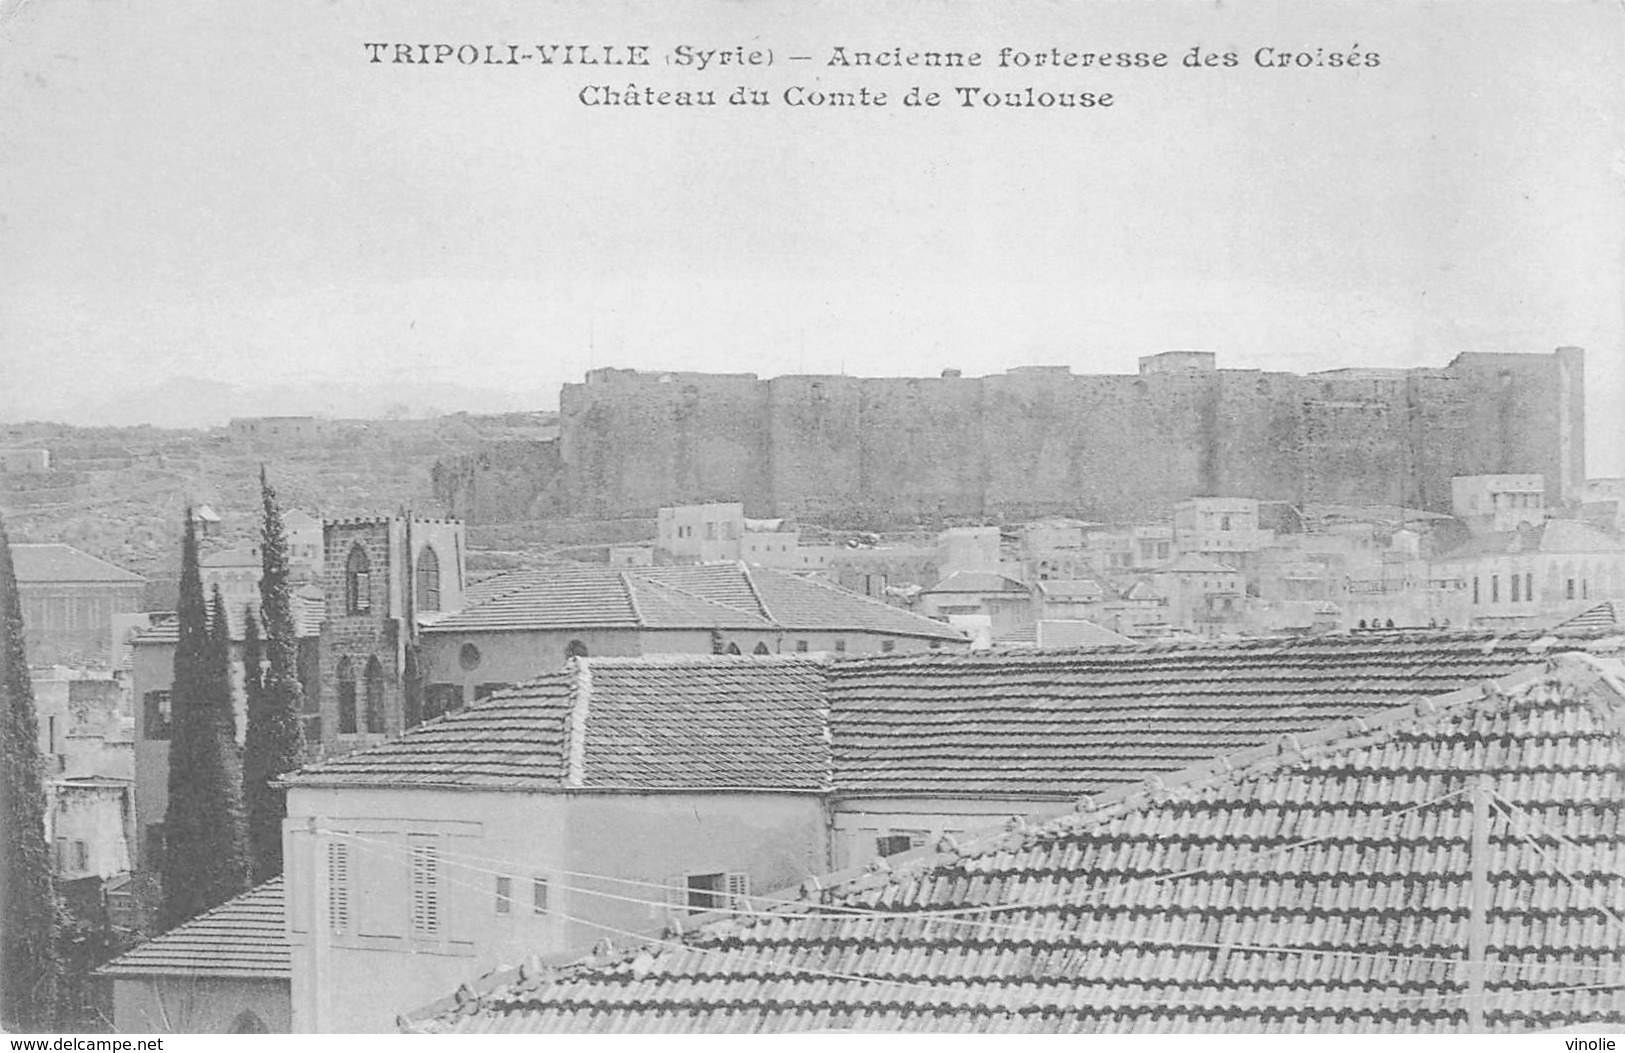 D.18-3057 : TRIPOLI-VILLE. SYRIE  ANCIENNE FORTERESSE DES CROISES. CHATEAU DU COMTE DE TOULOUSE. - Syrie